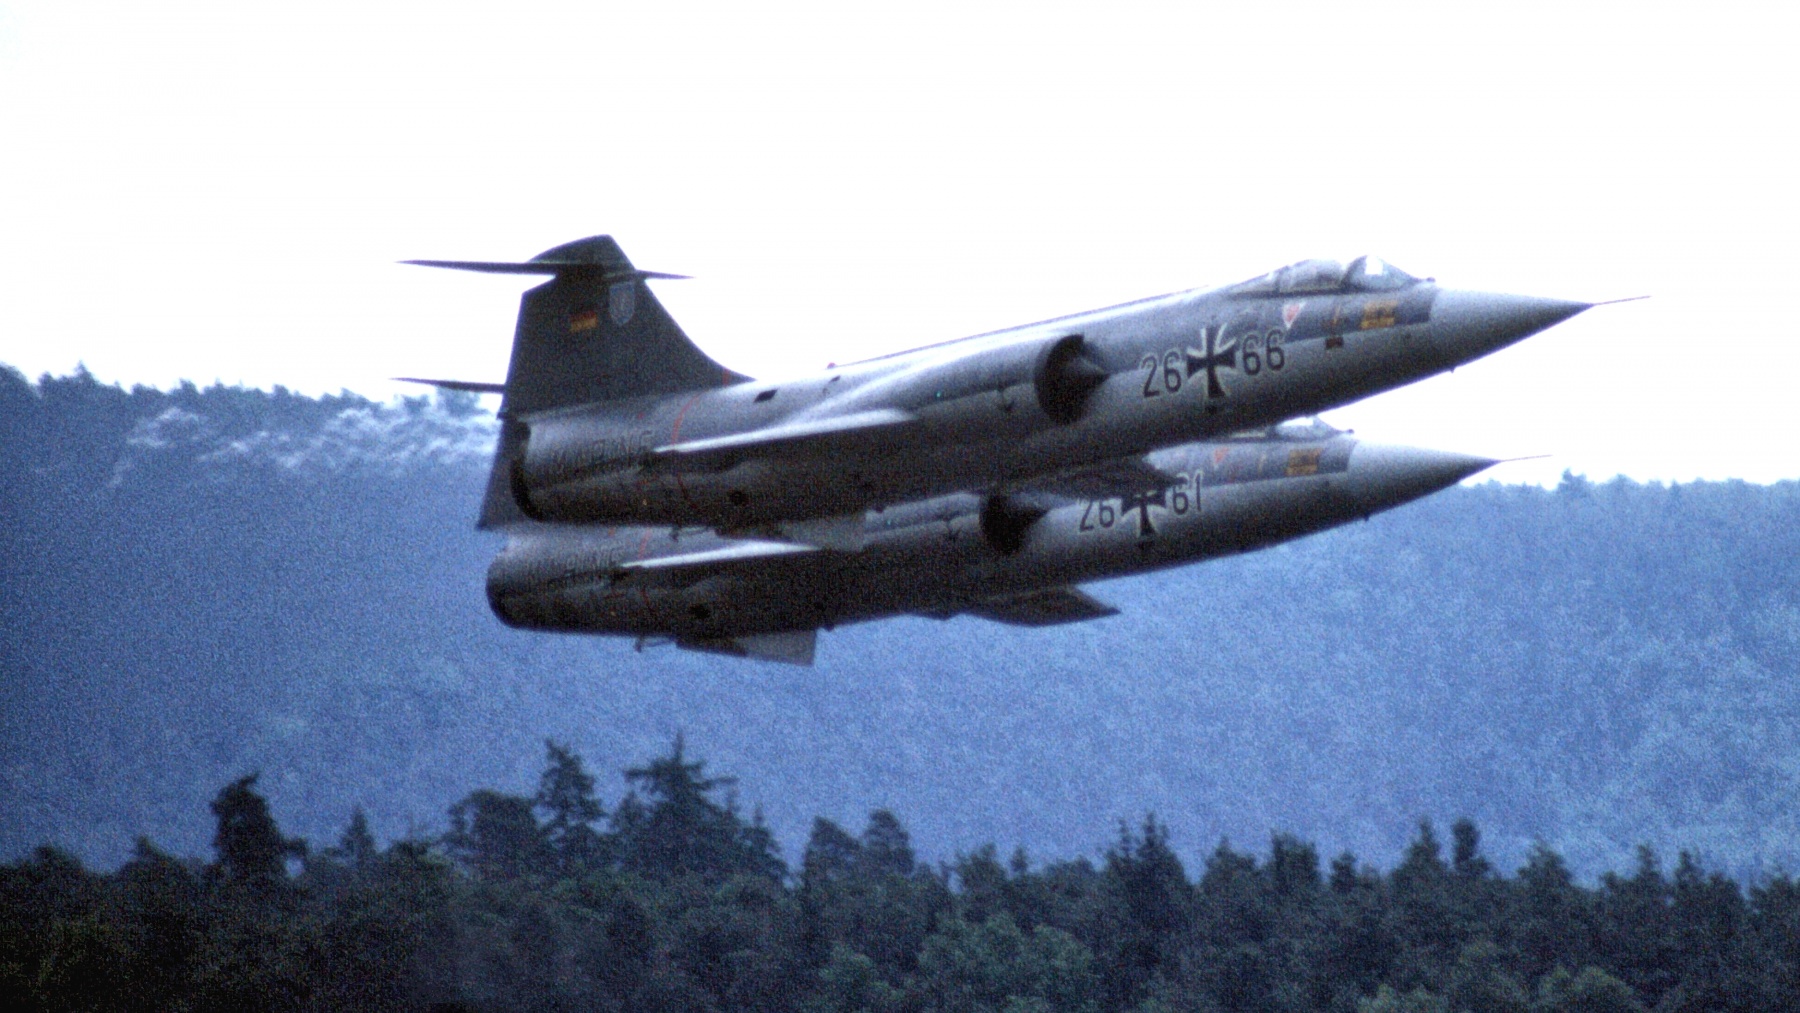 F-104G